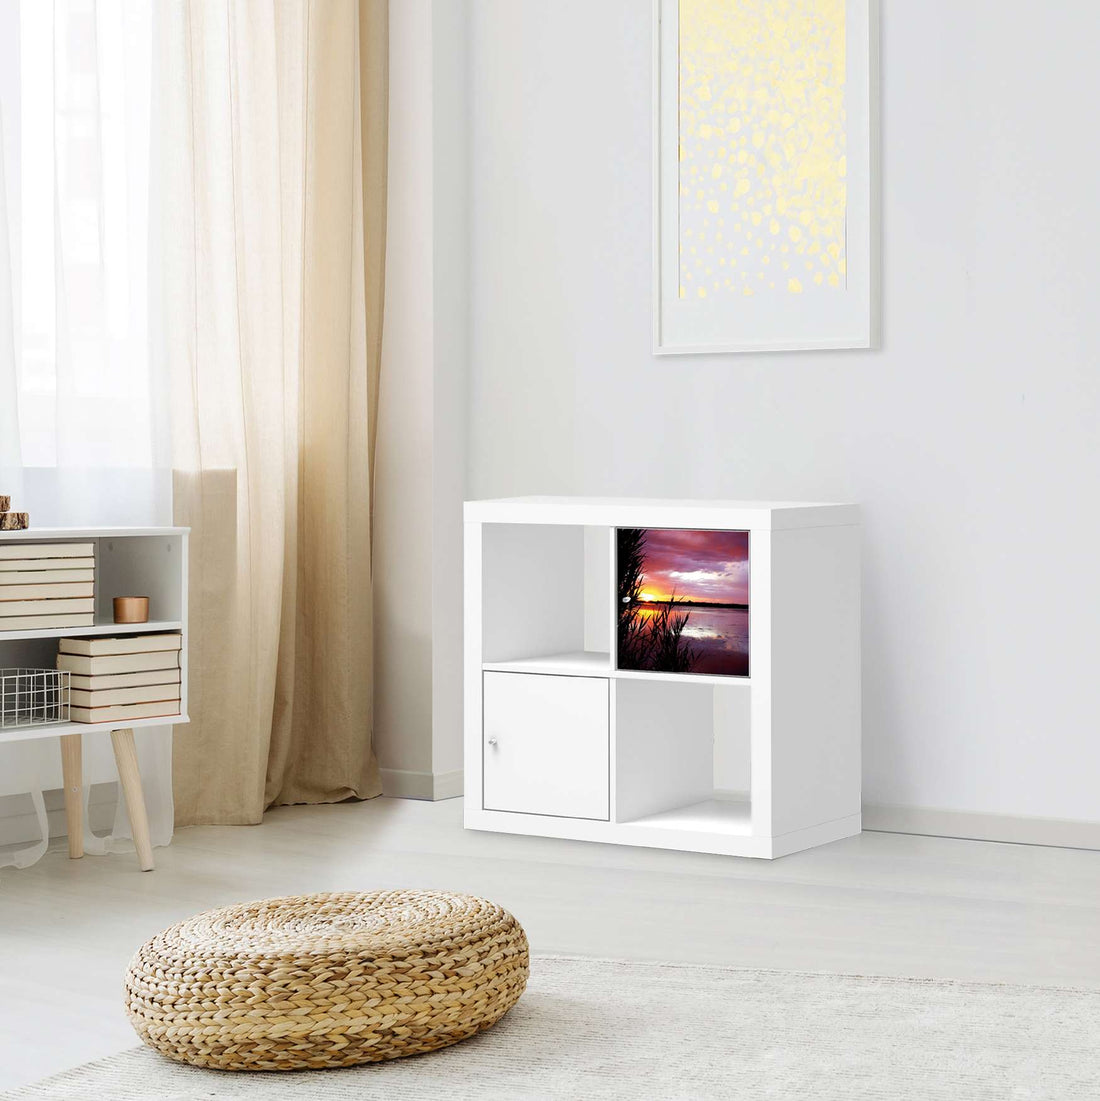 Selbstklebende Folie Dream away - IKEA Kallax Regal 1 Türe - Wohnzimmer